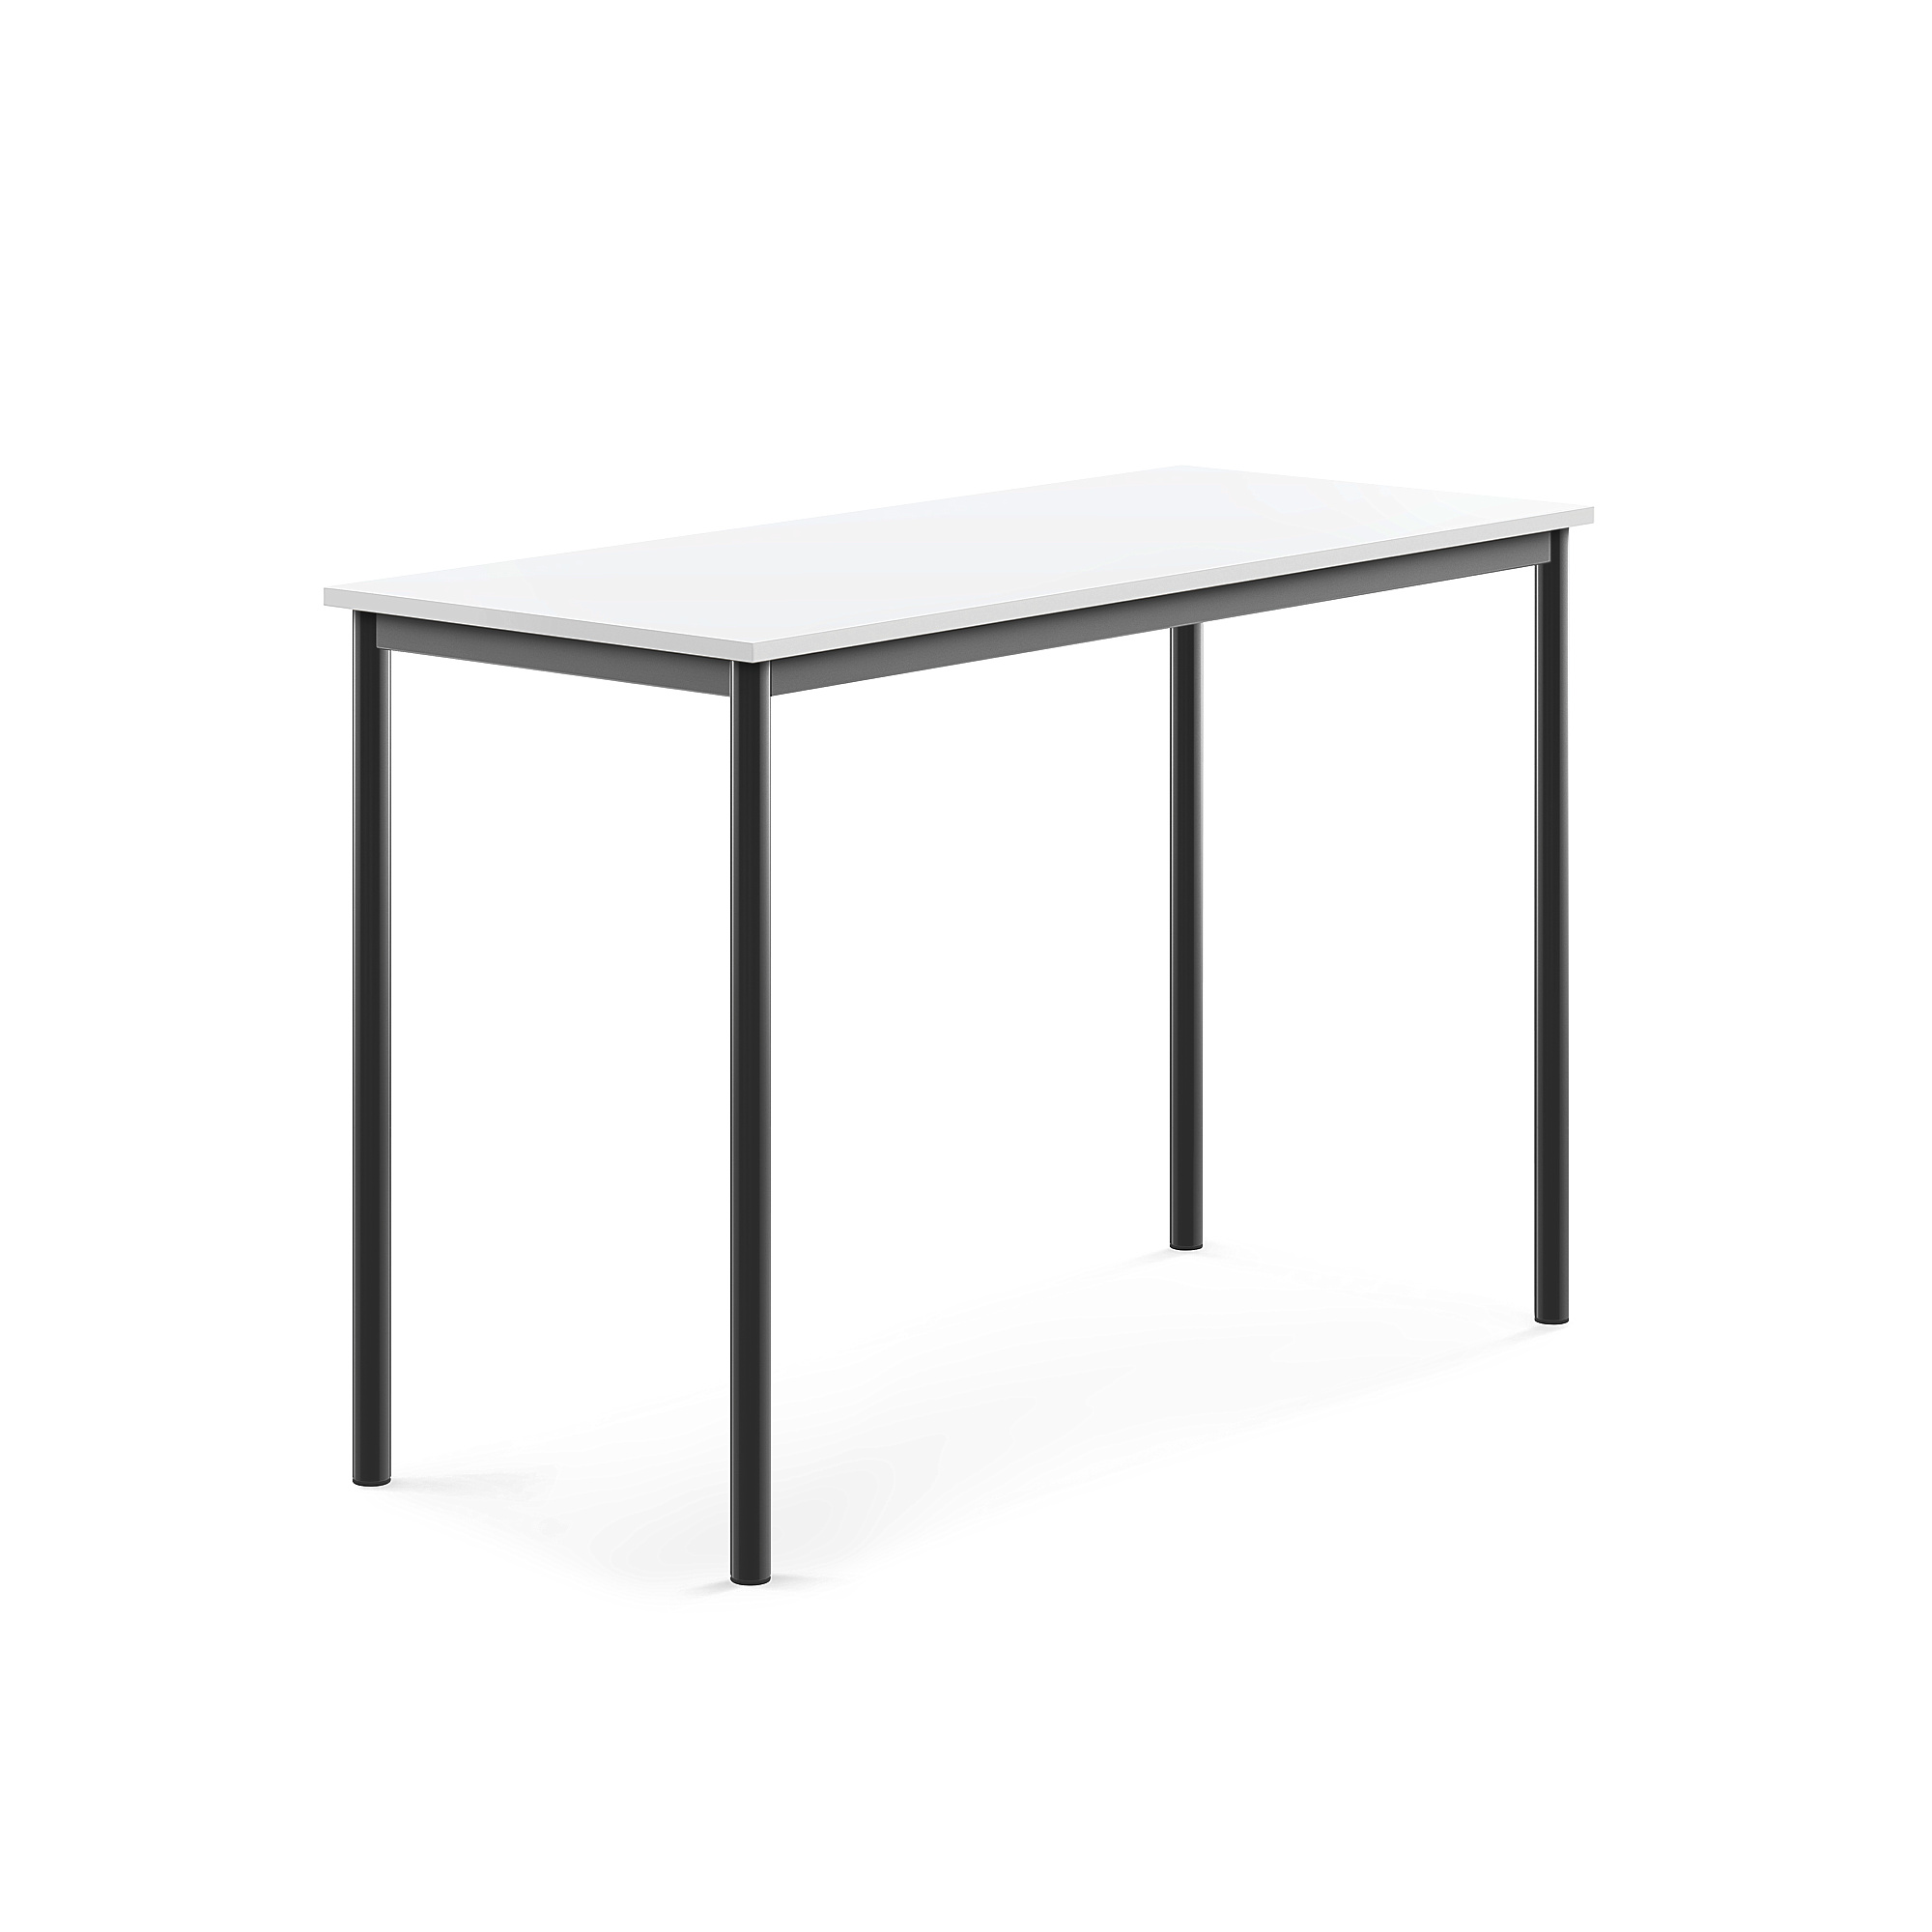 Stůl SONITUS, 1400x600x900 mm, antracitově šedé nohy, HPL deska tlumící hluk, bílá